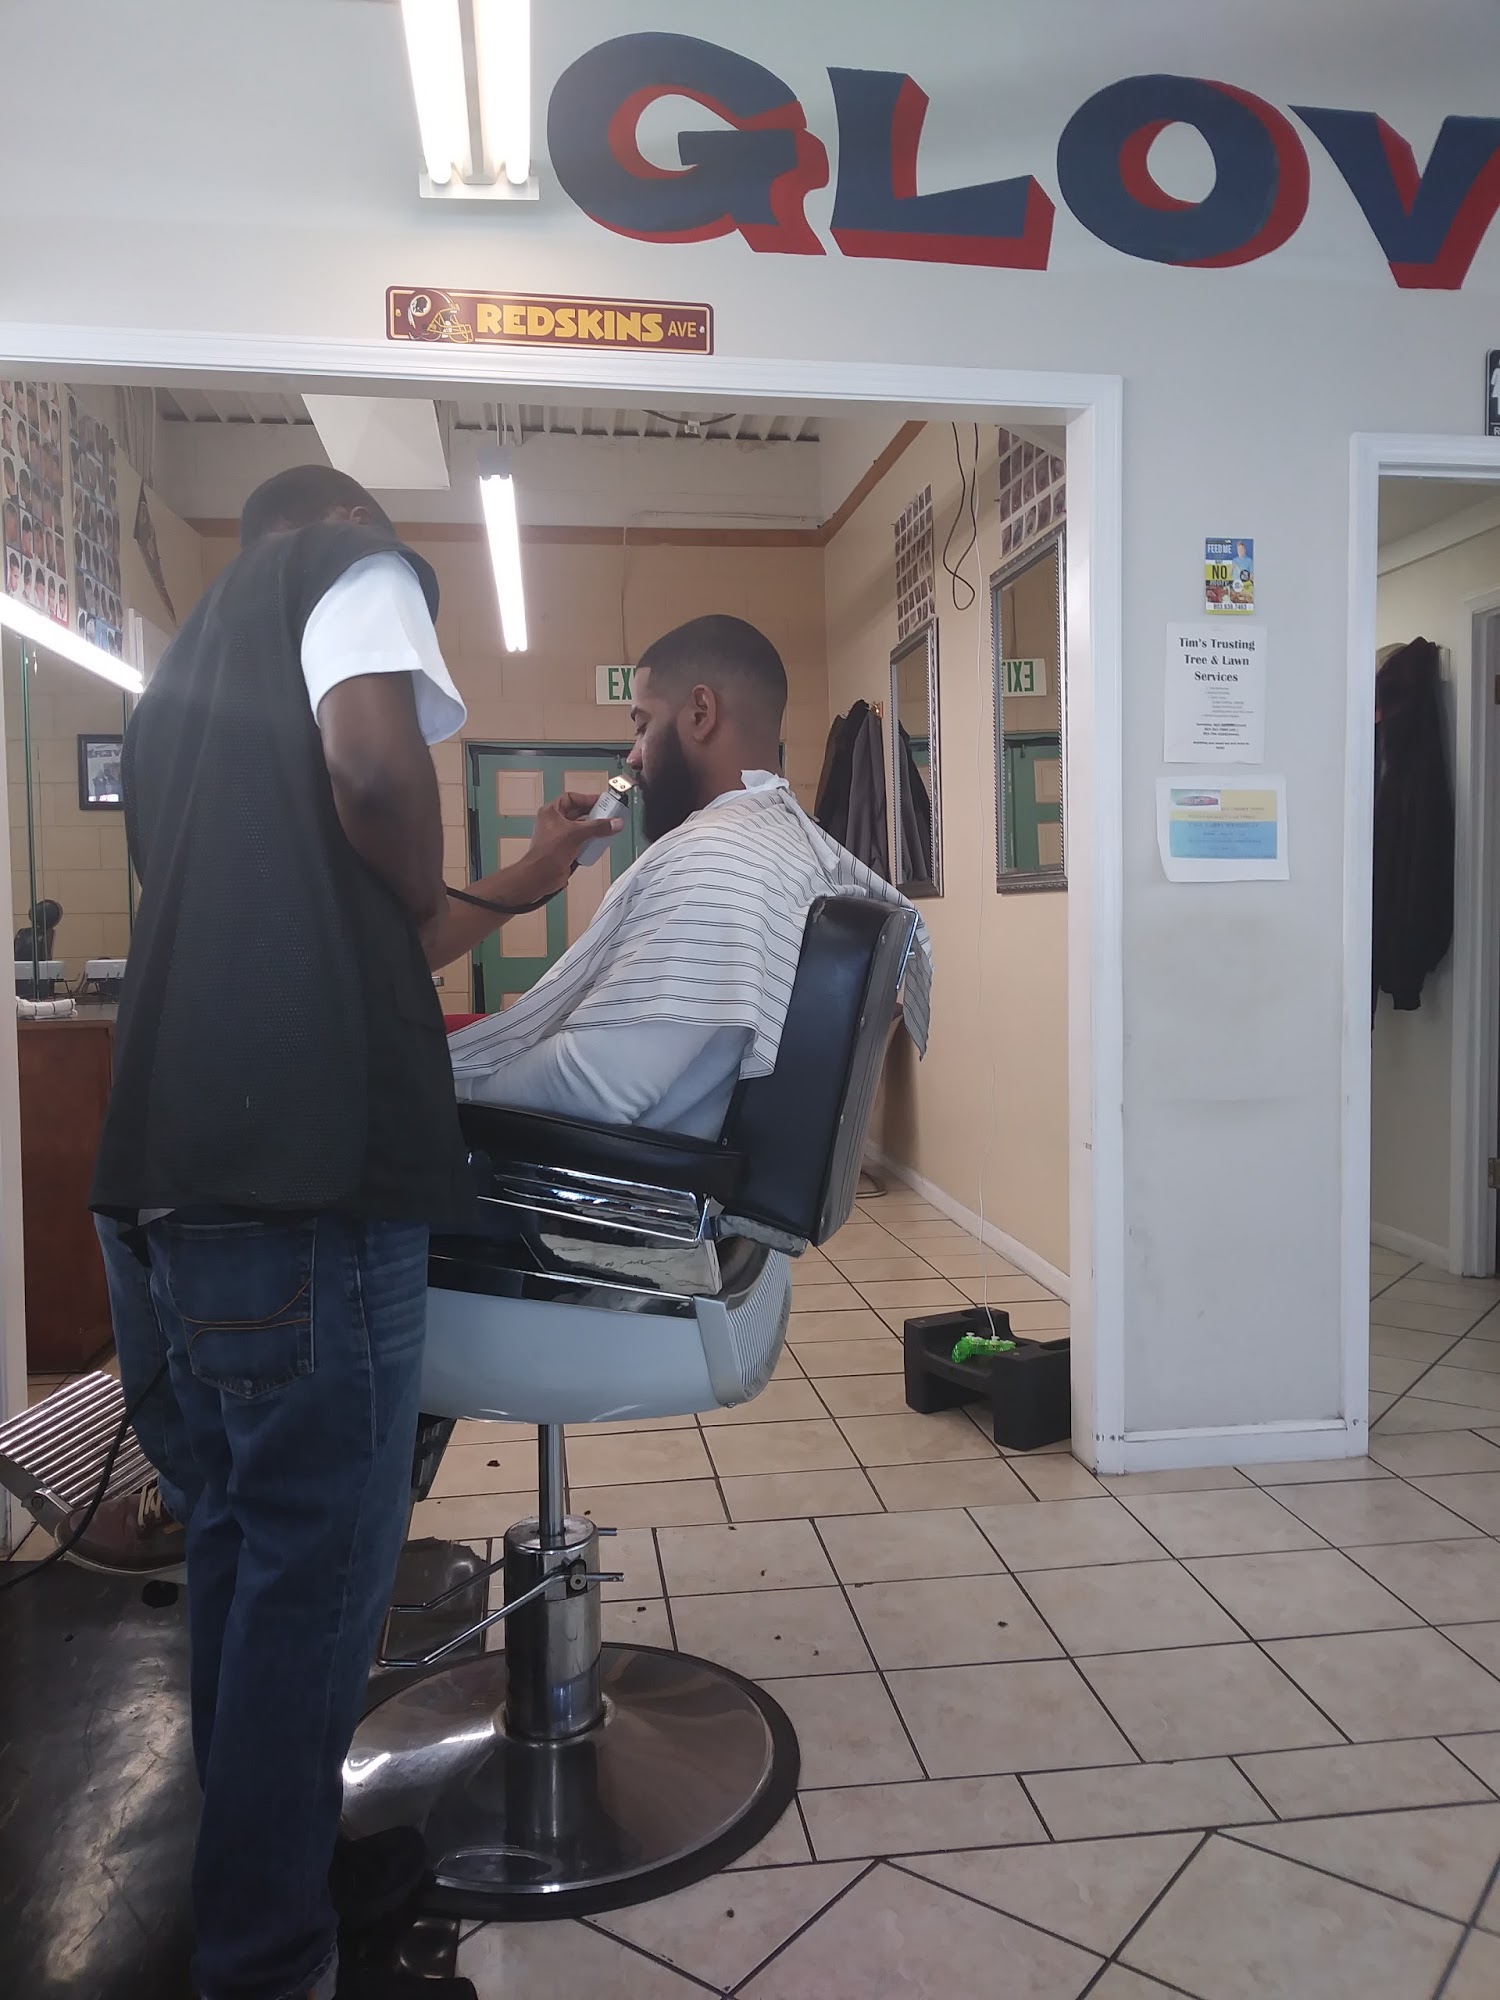 Glover's 1 Barber Shop